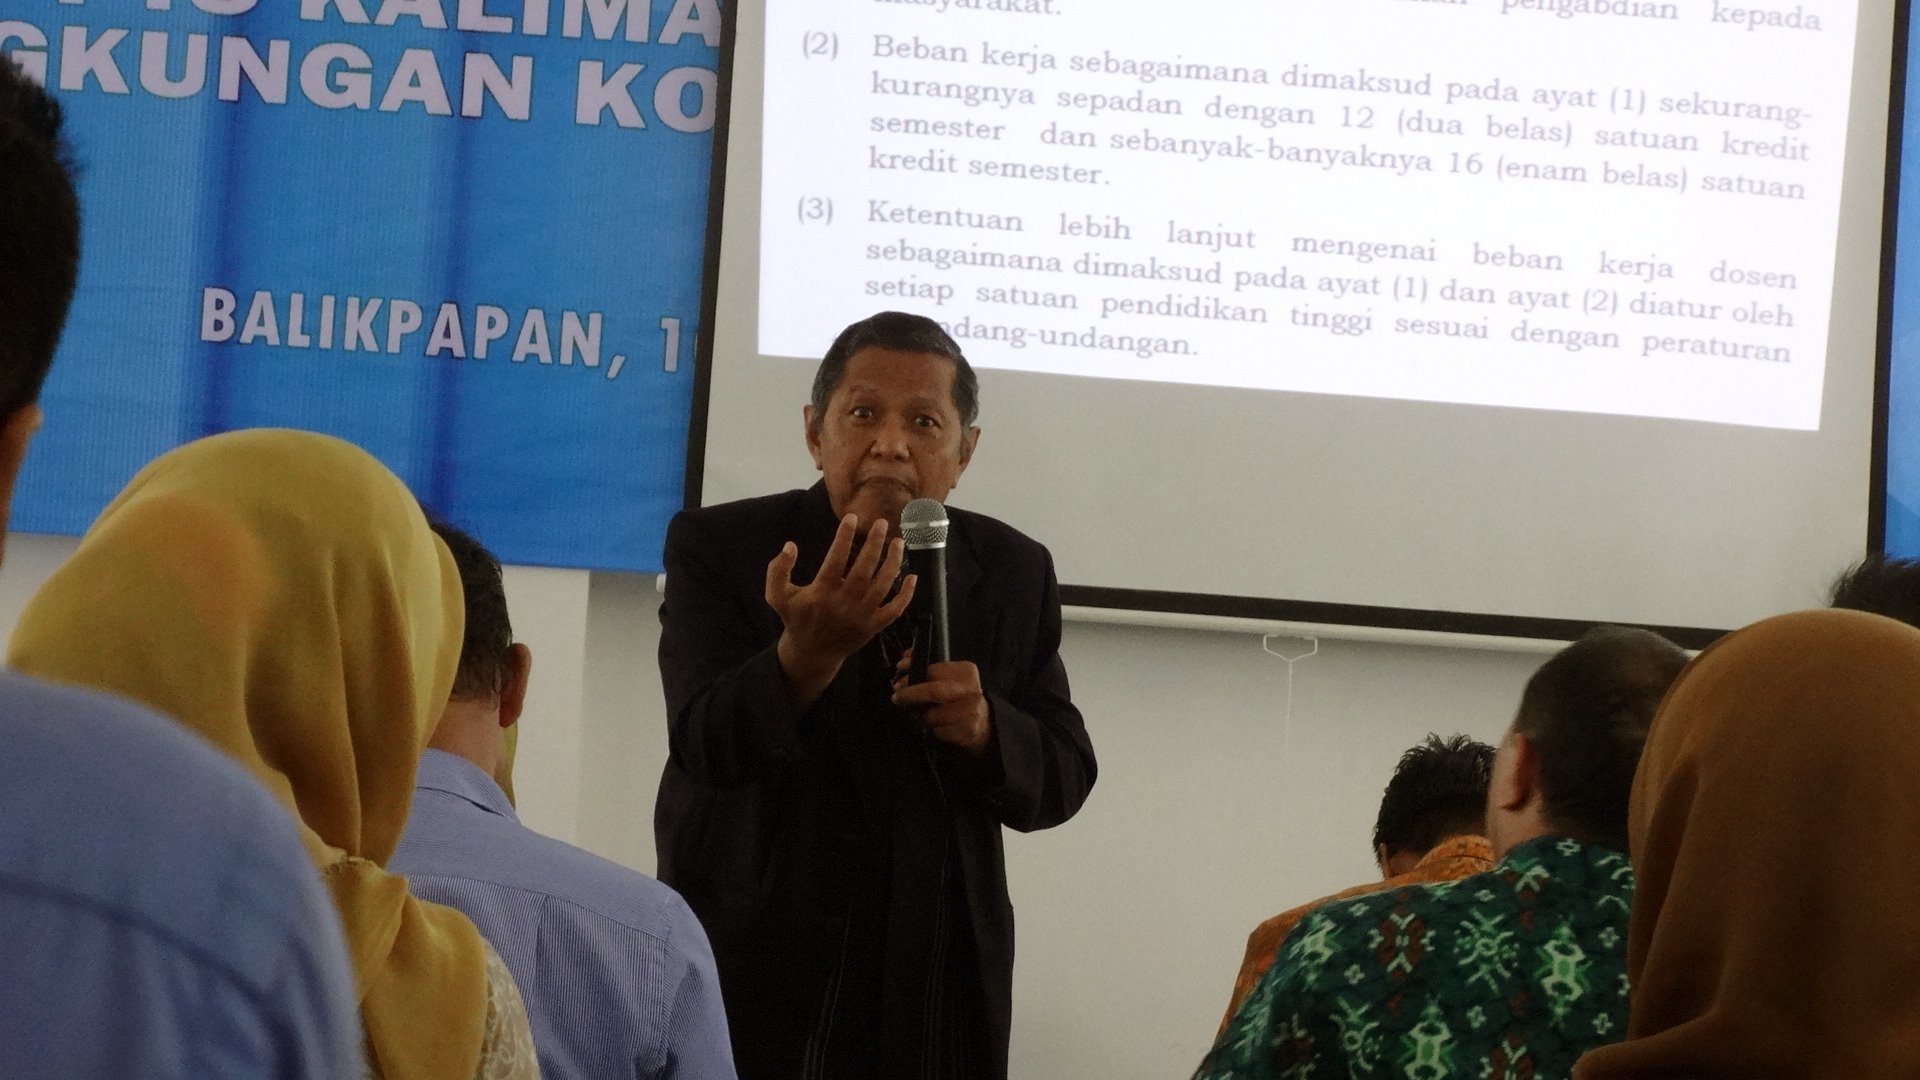 Prof Dr Djoko Kustono, Tim BKD Ristekdikti dari Universitas Malang saat memberi paparan. Foto: dok. pribadi